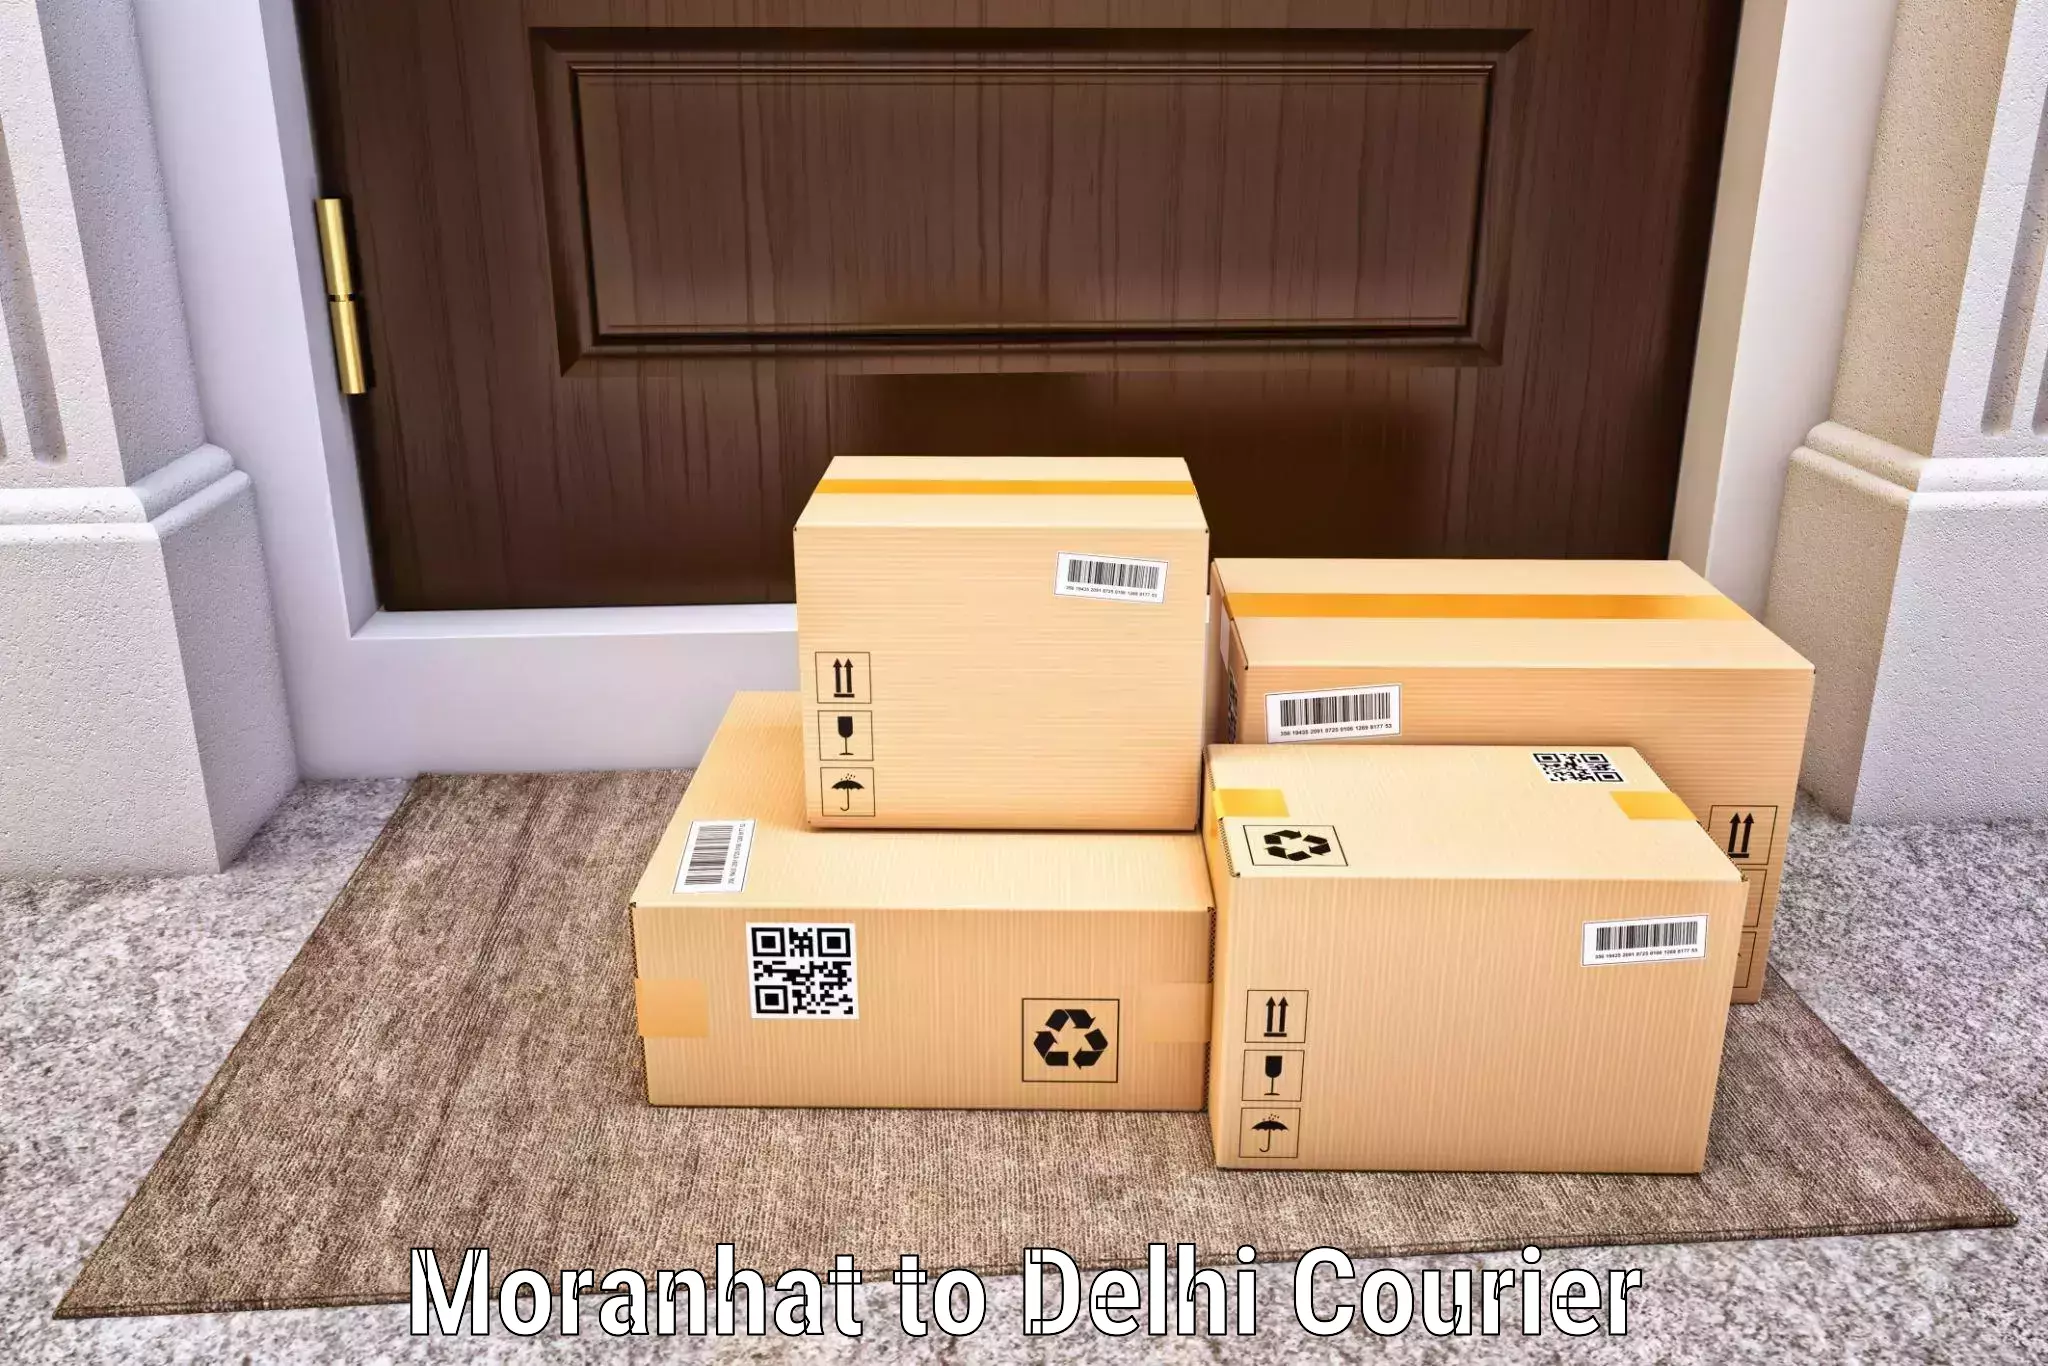 Premium courier solutions Moranhat to Delhi